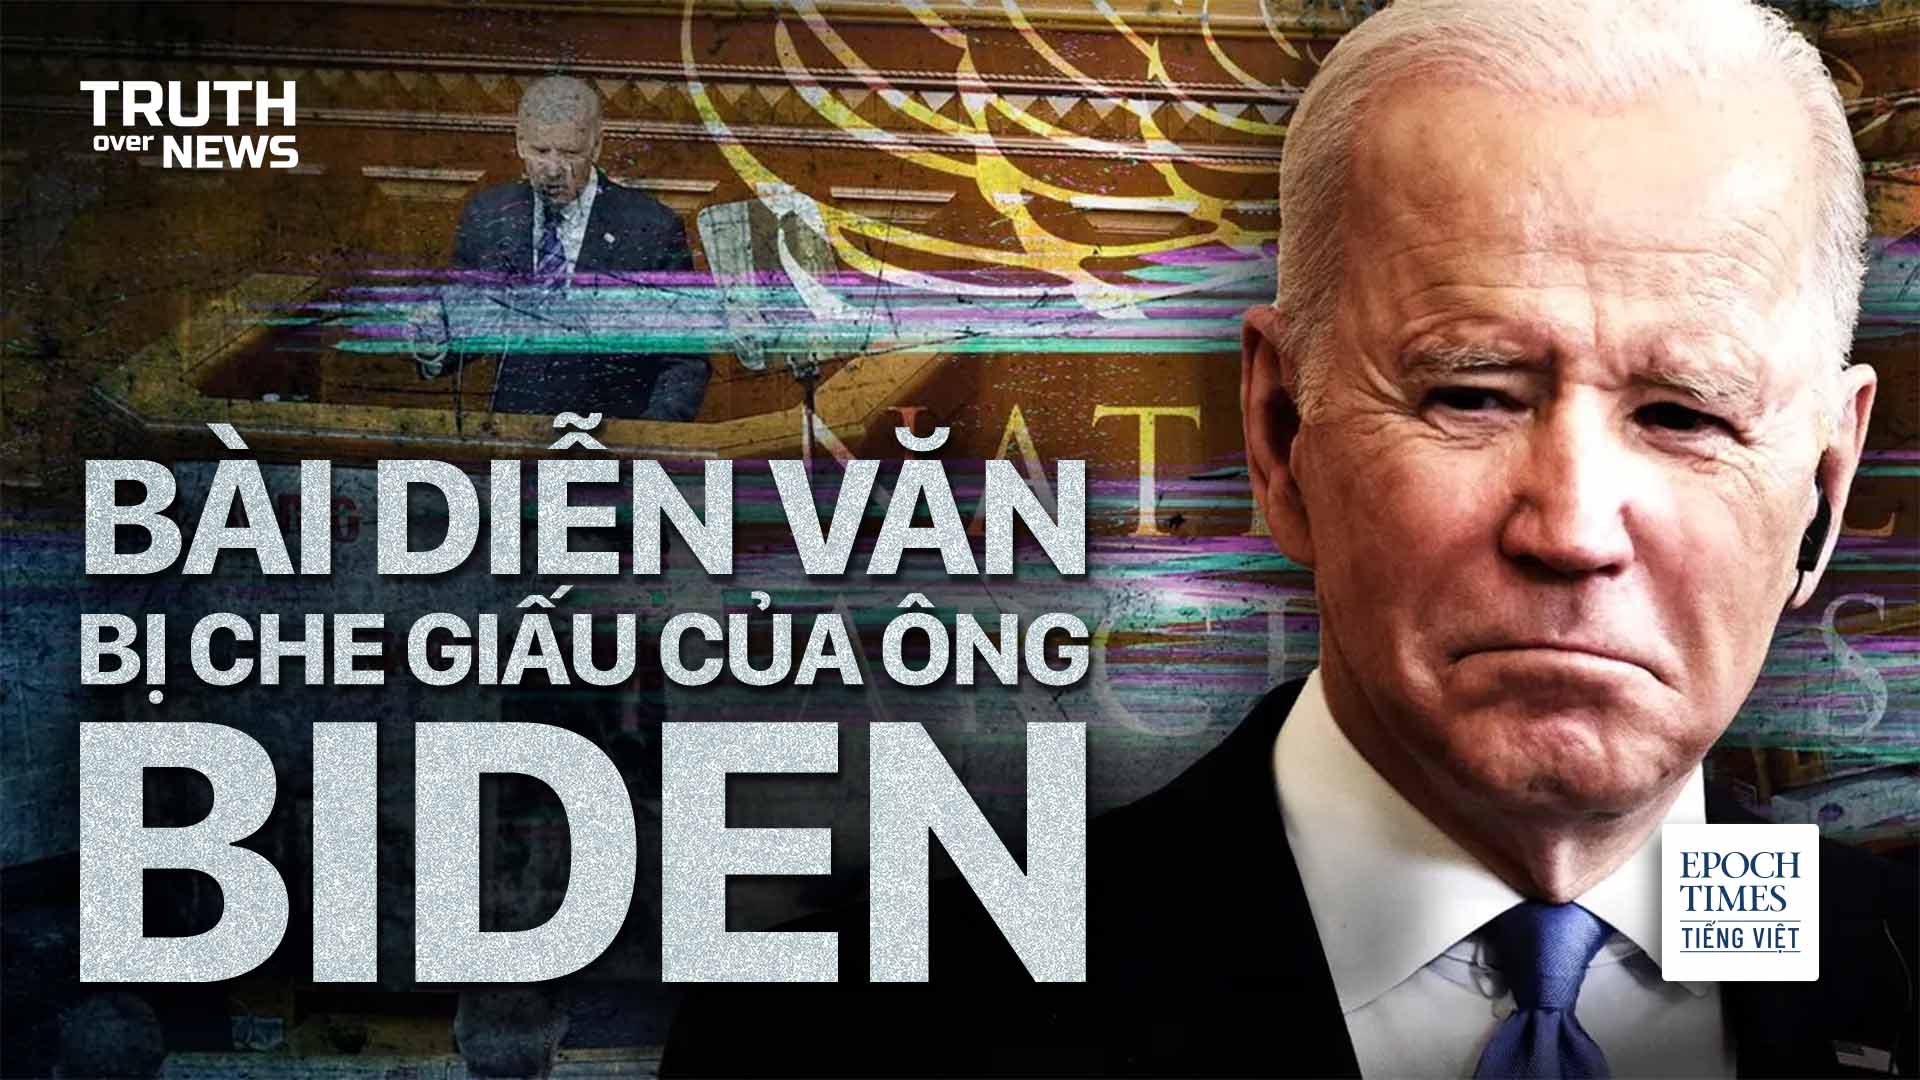 Ông Biden ngăn chặn các yêu cầu của Quốc hội về việc xem bản thảo bài diễn văn tại Ukraine hồi năm 2015